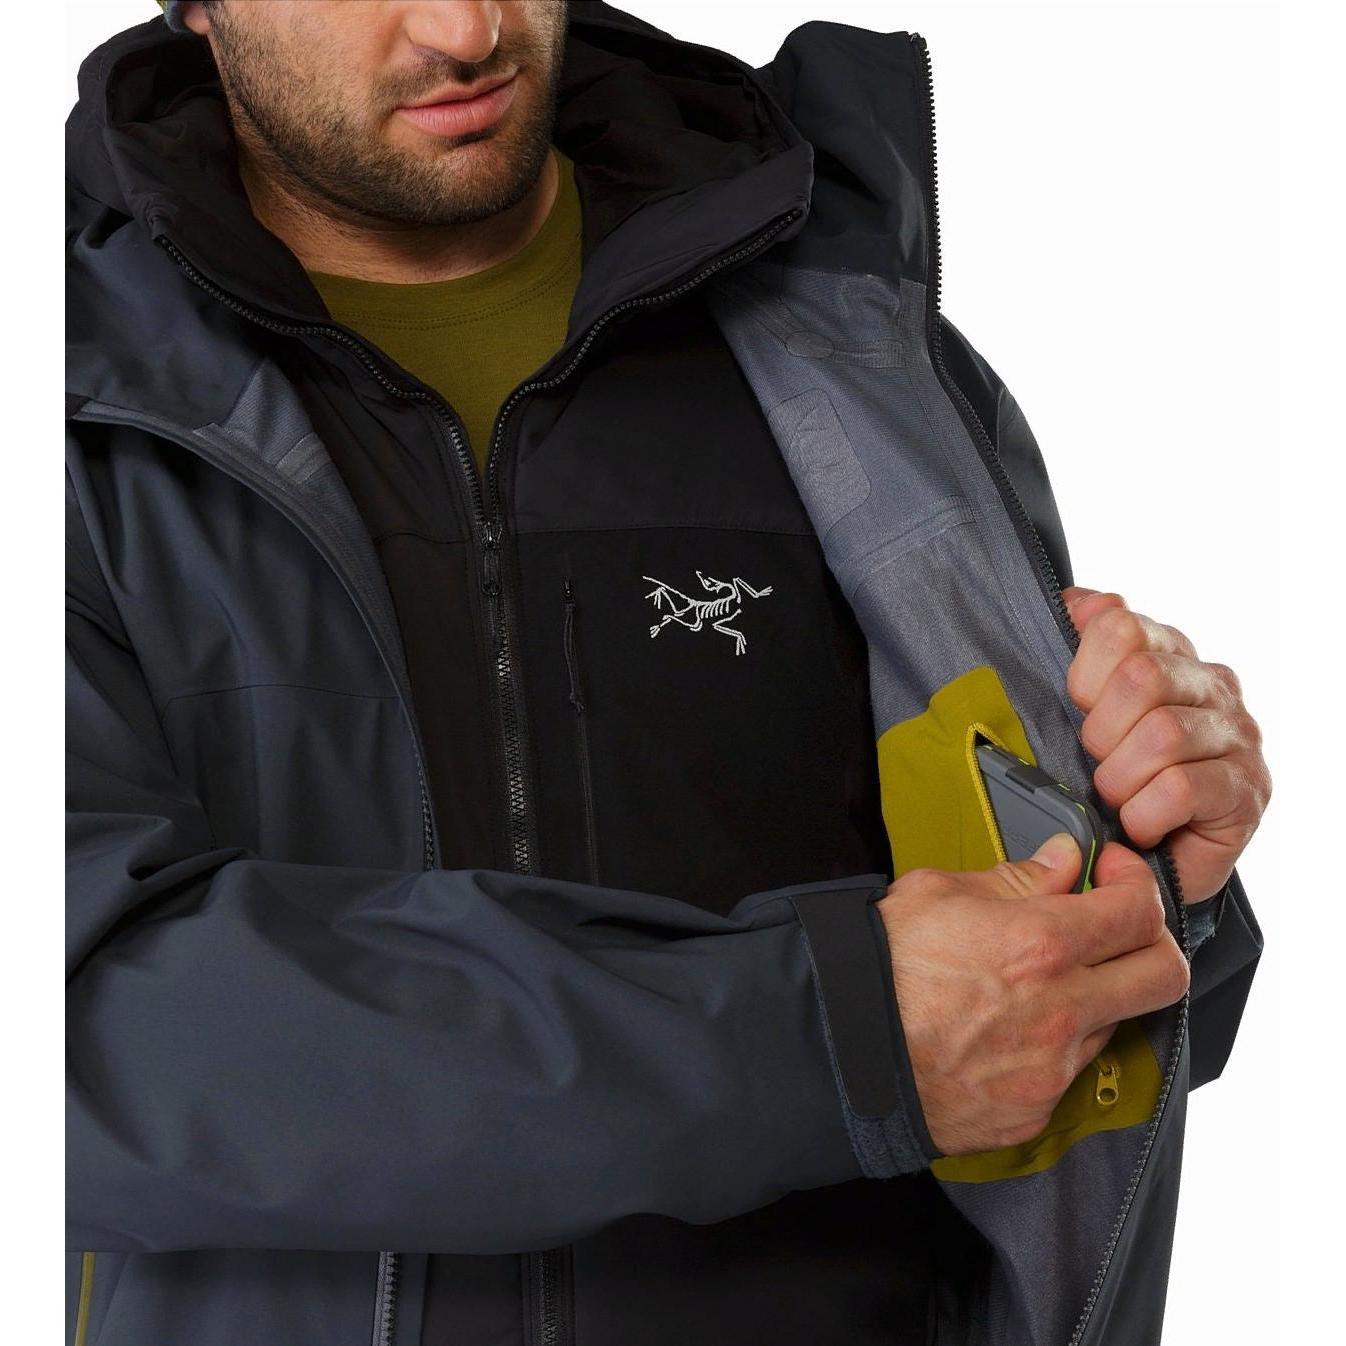 Куртка для активного отдыха Arcteryx 2018-19 Sabre Lichen